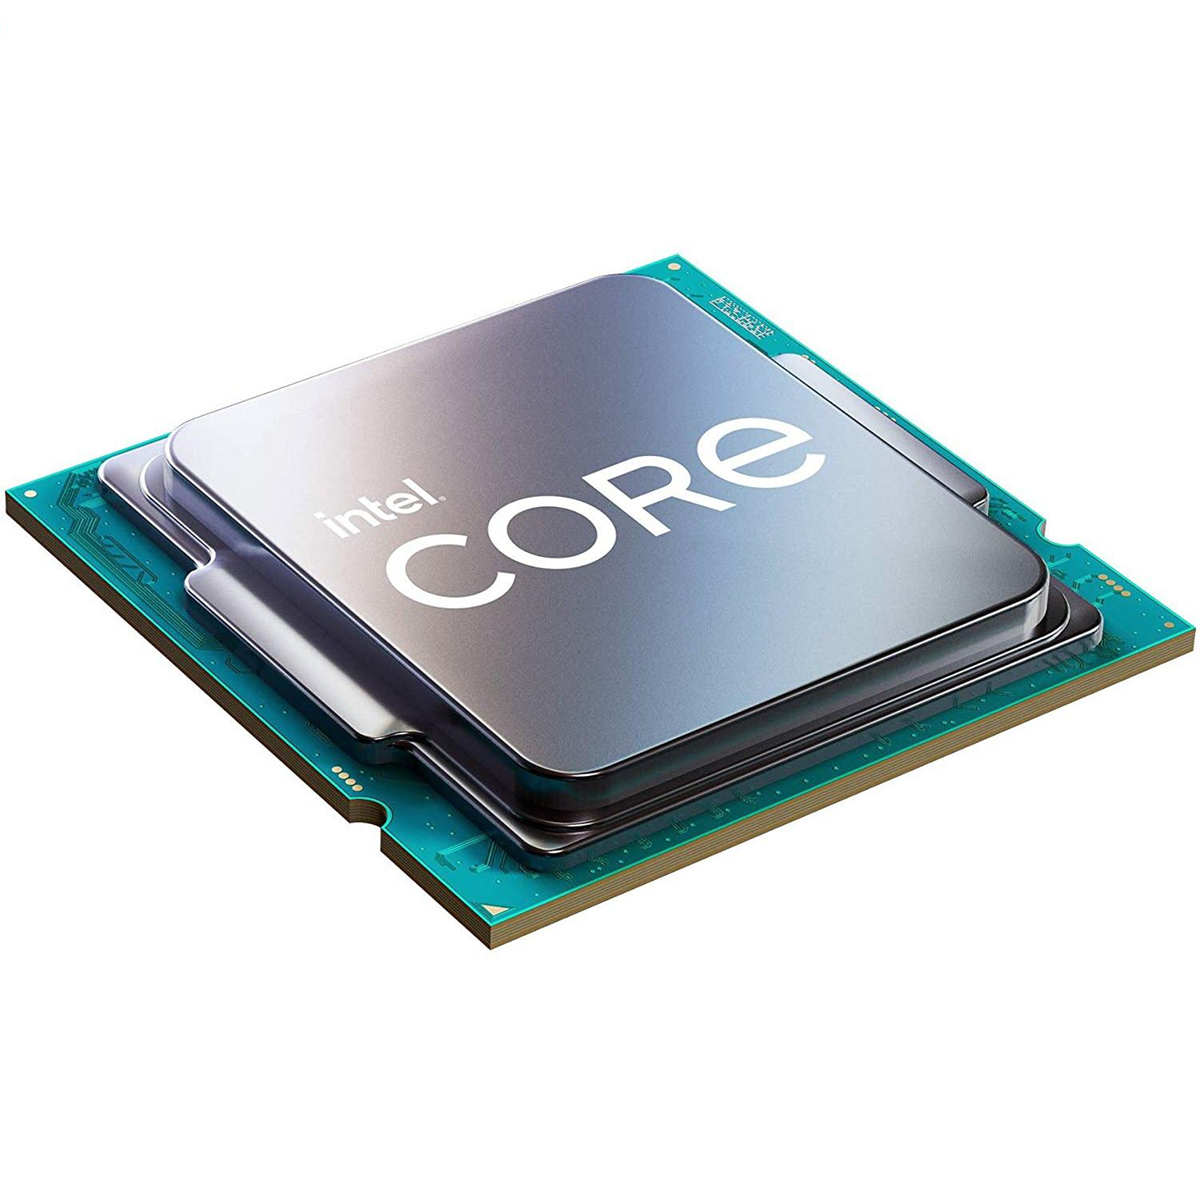 پردازنده اینتل مدل Core i5-8600k Tray